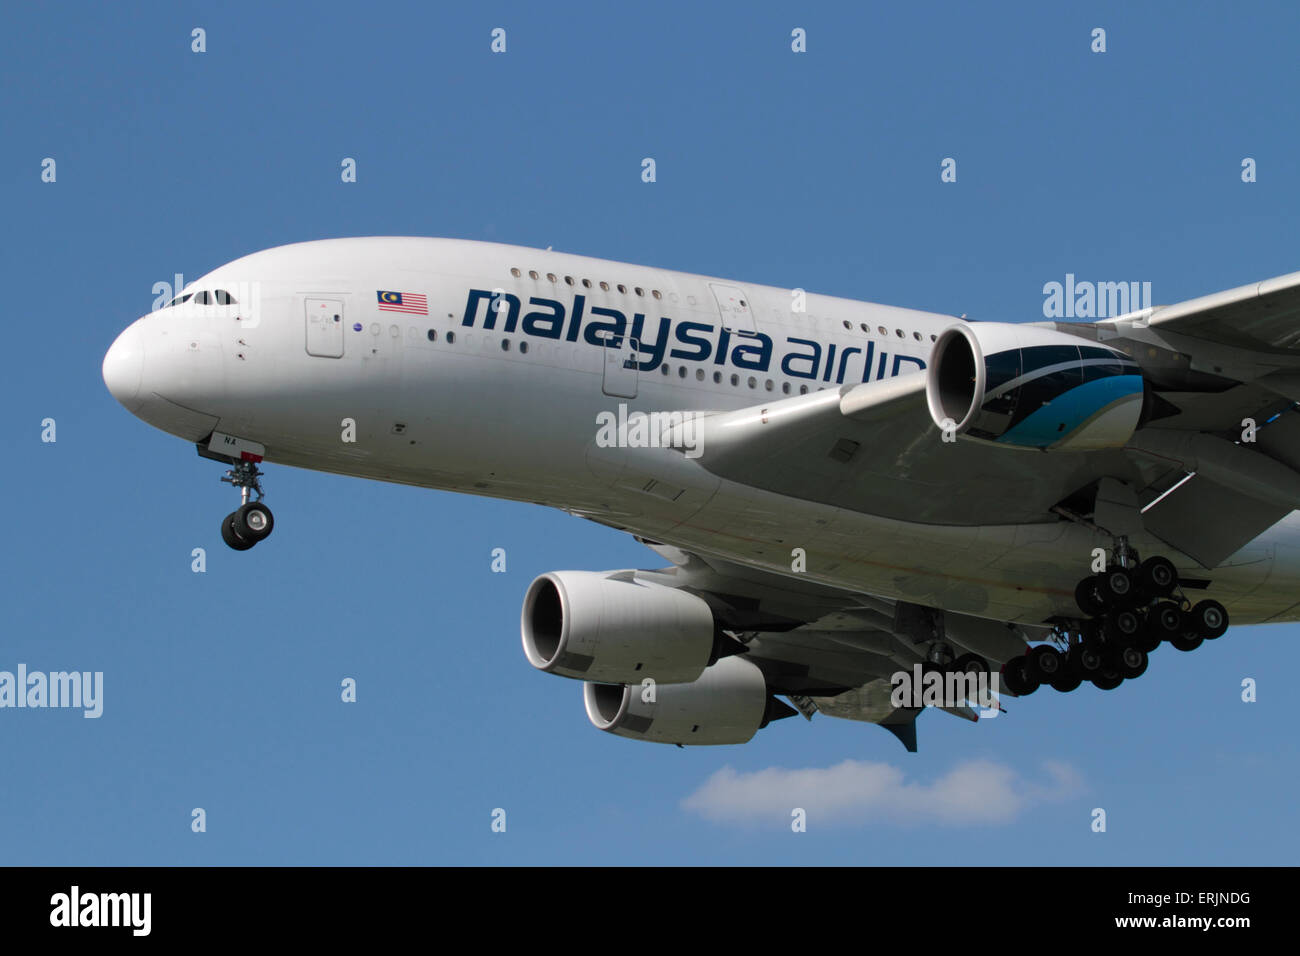 Libre d'un Airbus A380 de Malaysia Airlines avion superjumbo en approche. L'aviation civile moderne. Banque D'Images